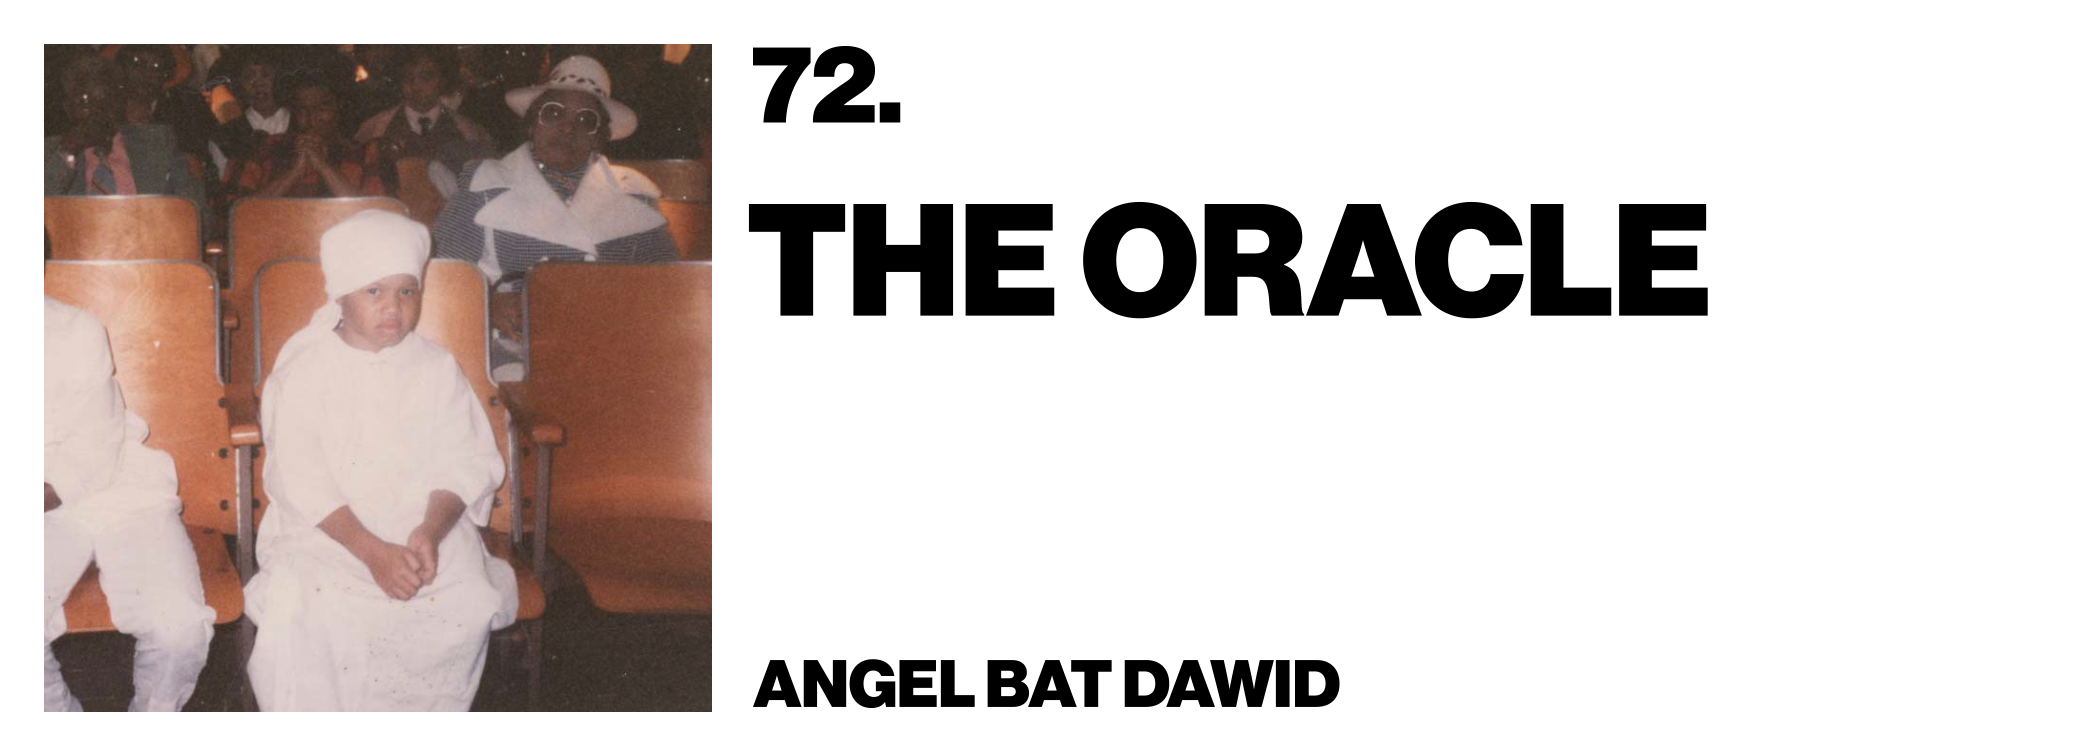 1575926016552-72-Angel-Bat-Dawid-The-Oracle